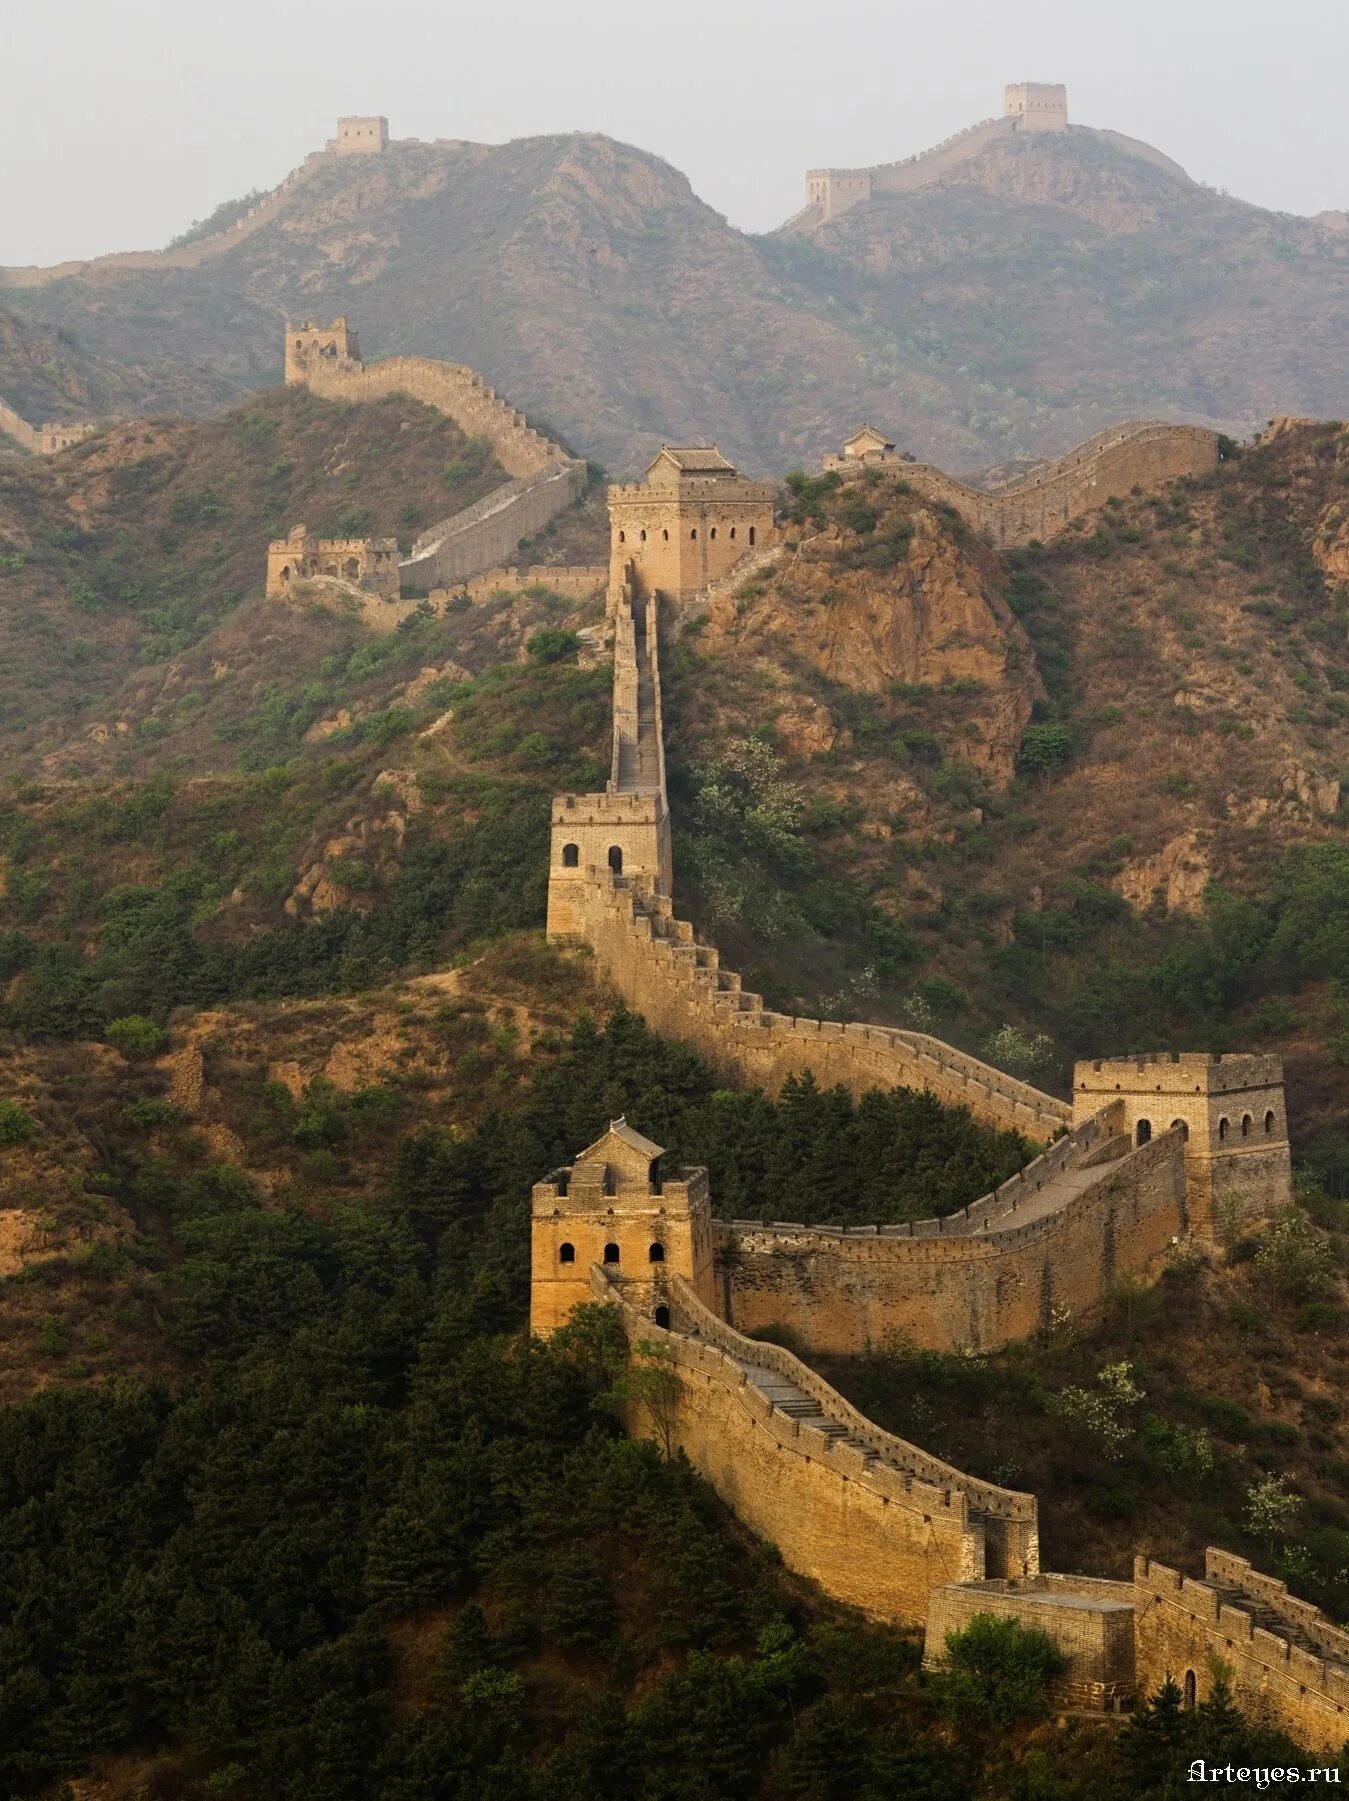 Китайская стена достопримечательность. Великая китайская стена. Великая китайская стена Хубэй. Великая китайская с Ена. Велиаая китайская стен.